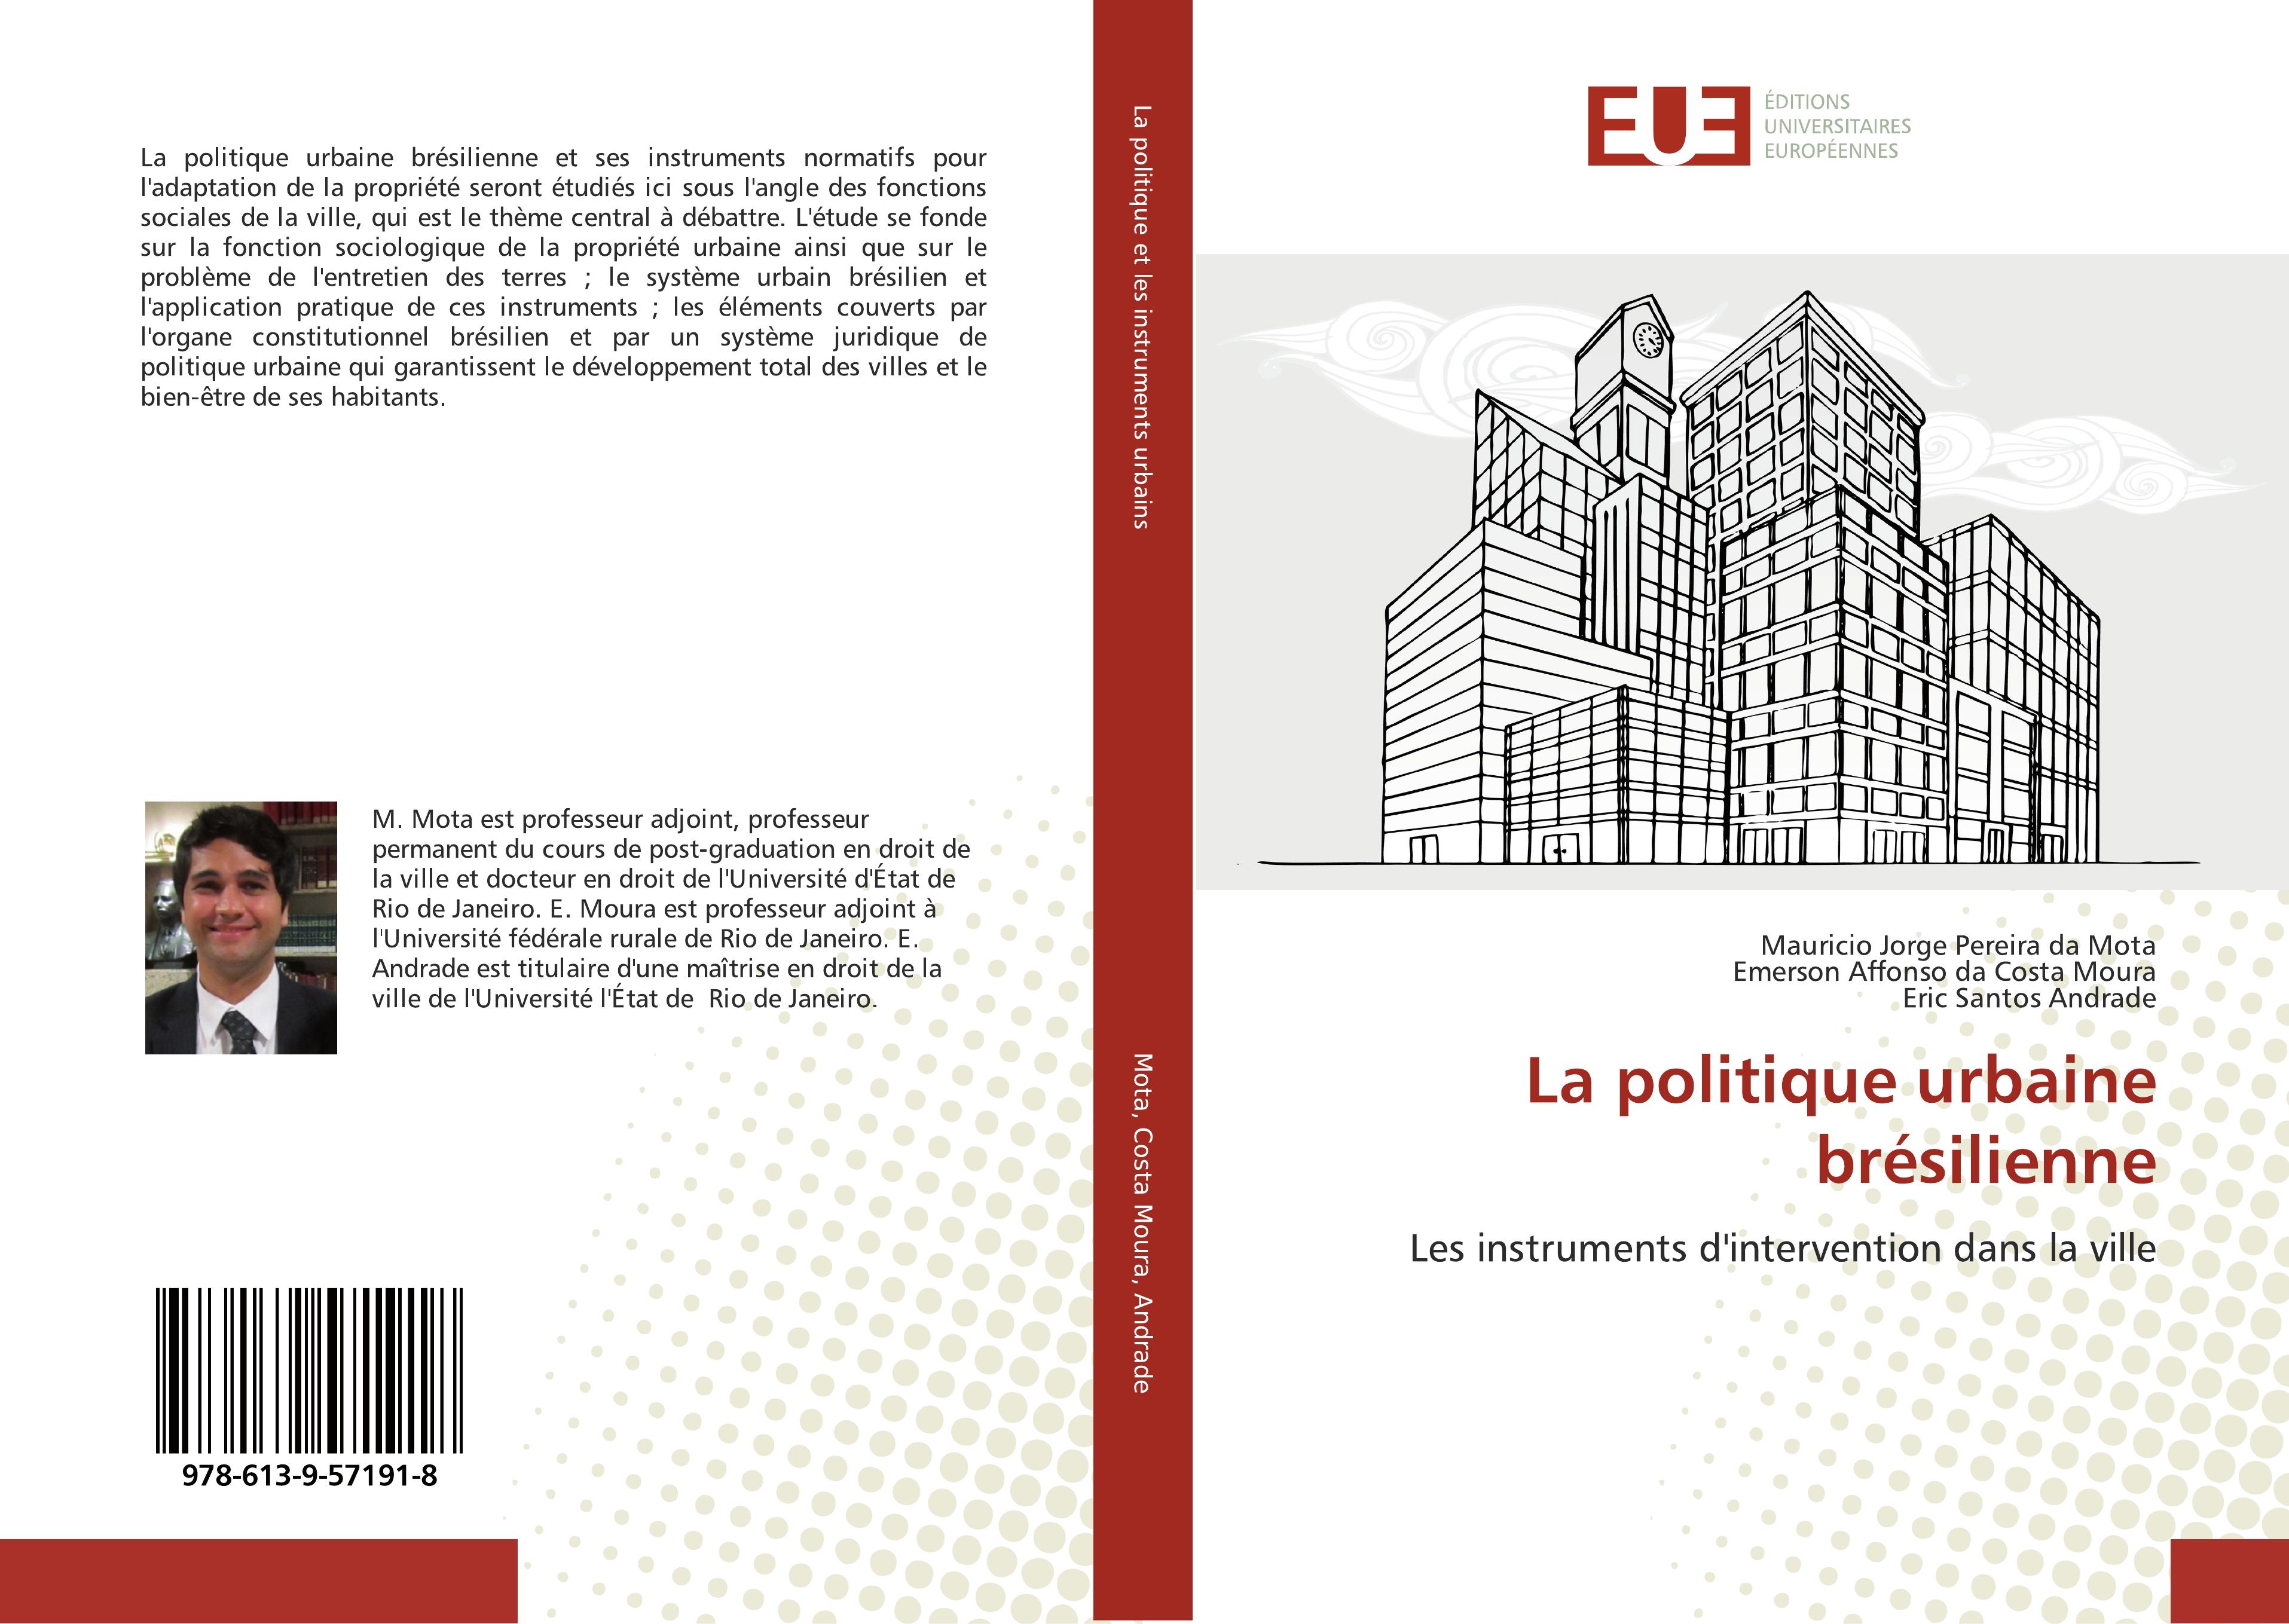 La politique urbaine brésilienne - Mauricio Jorge Pereira da Mota Emerson Affonso da Costa Moura Eric Santos Andrade